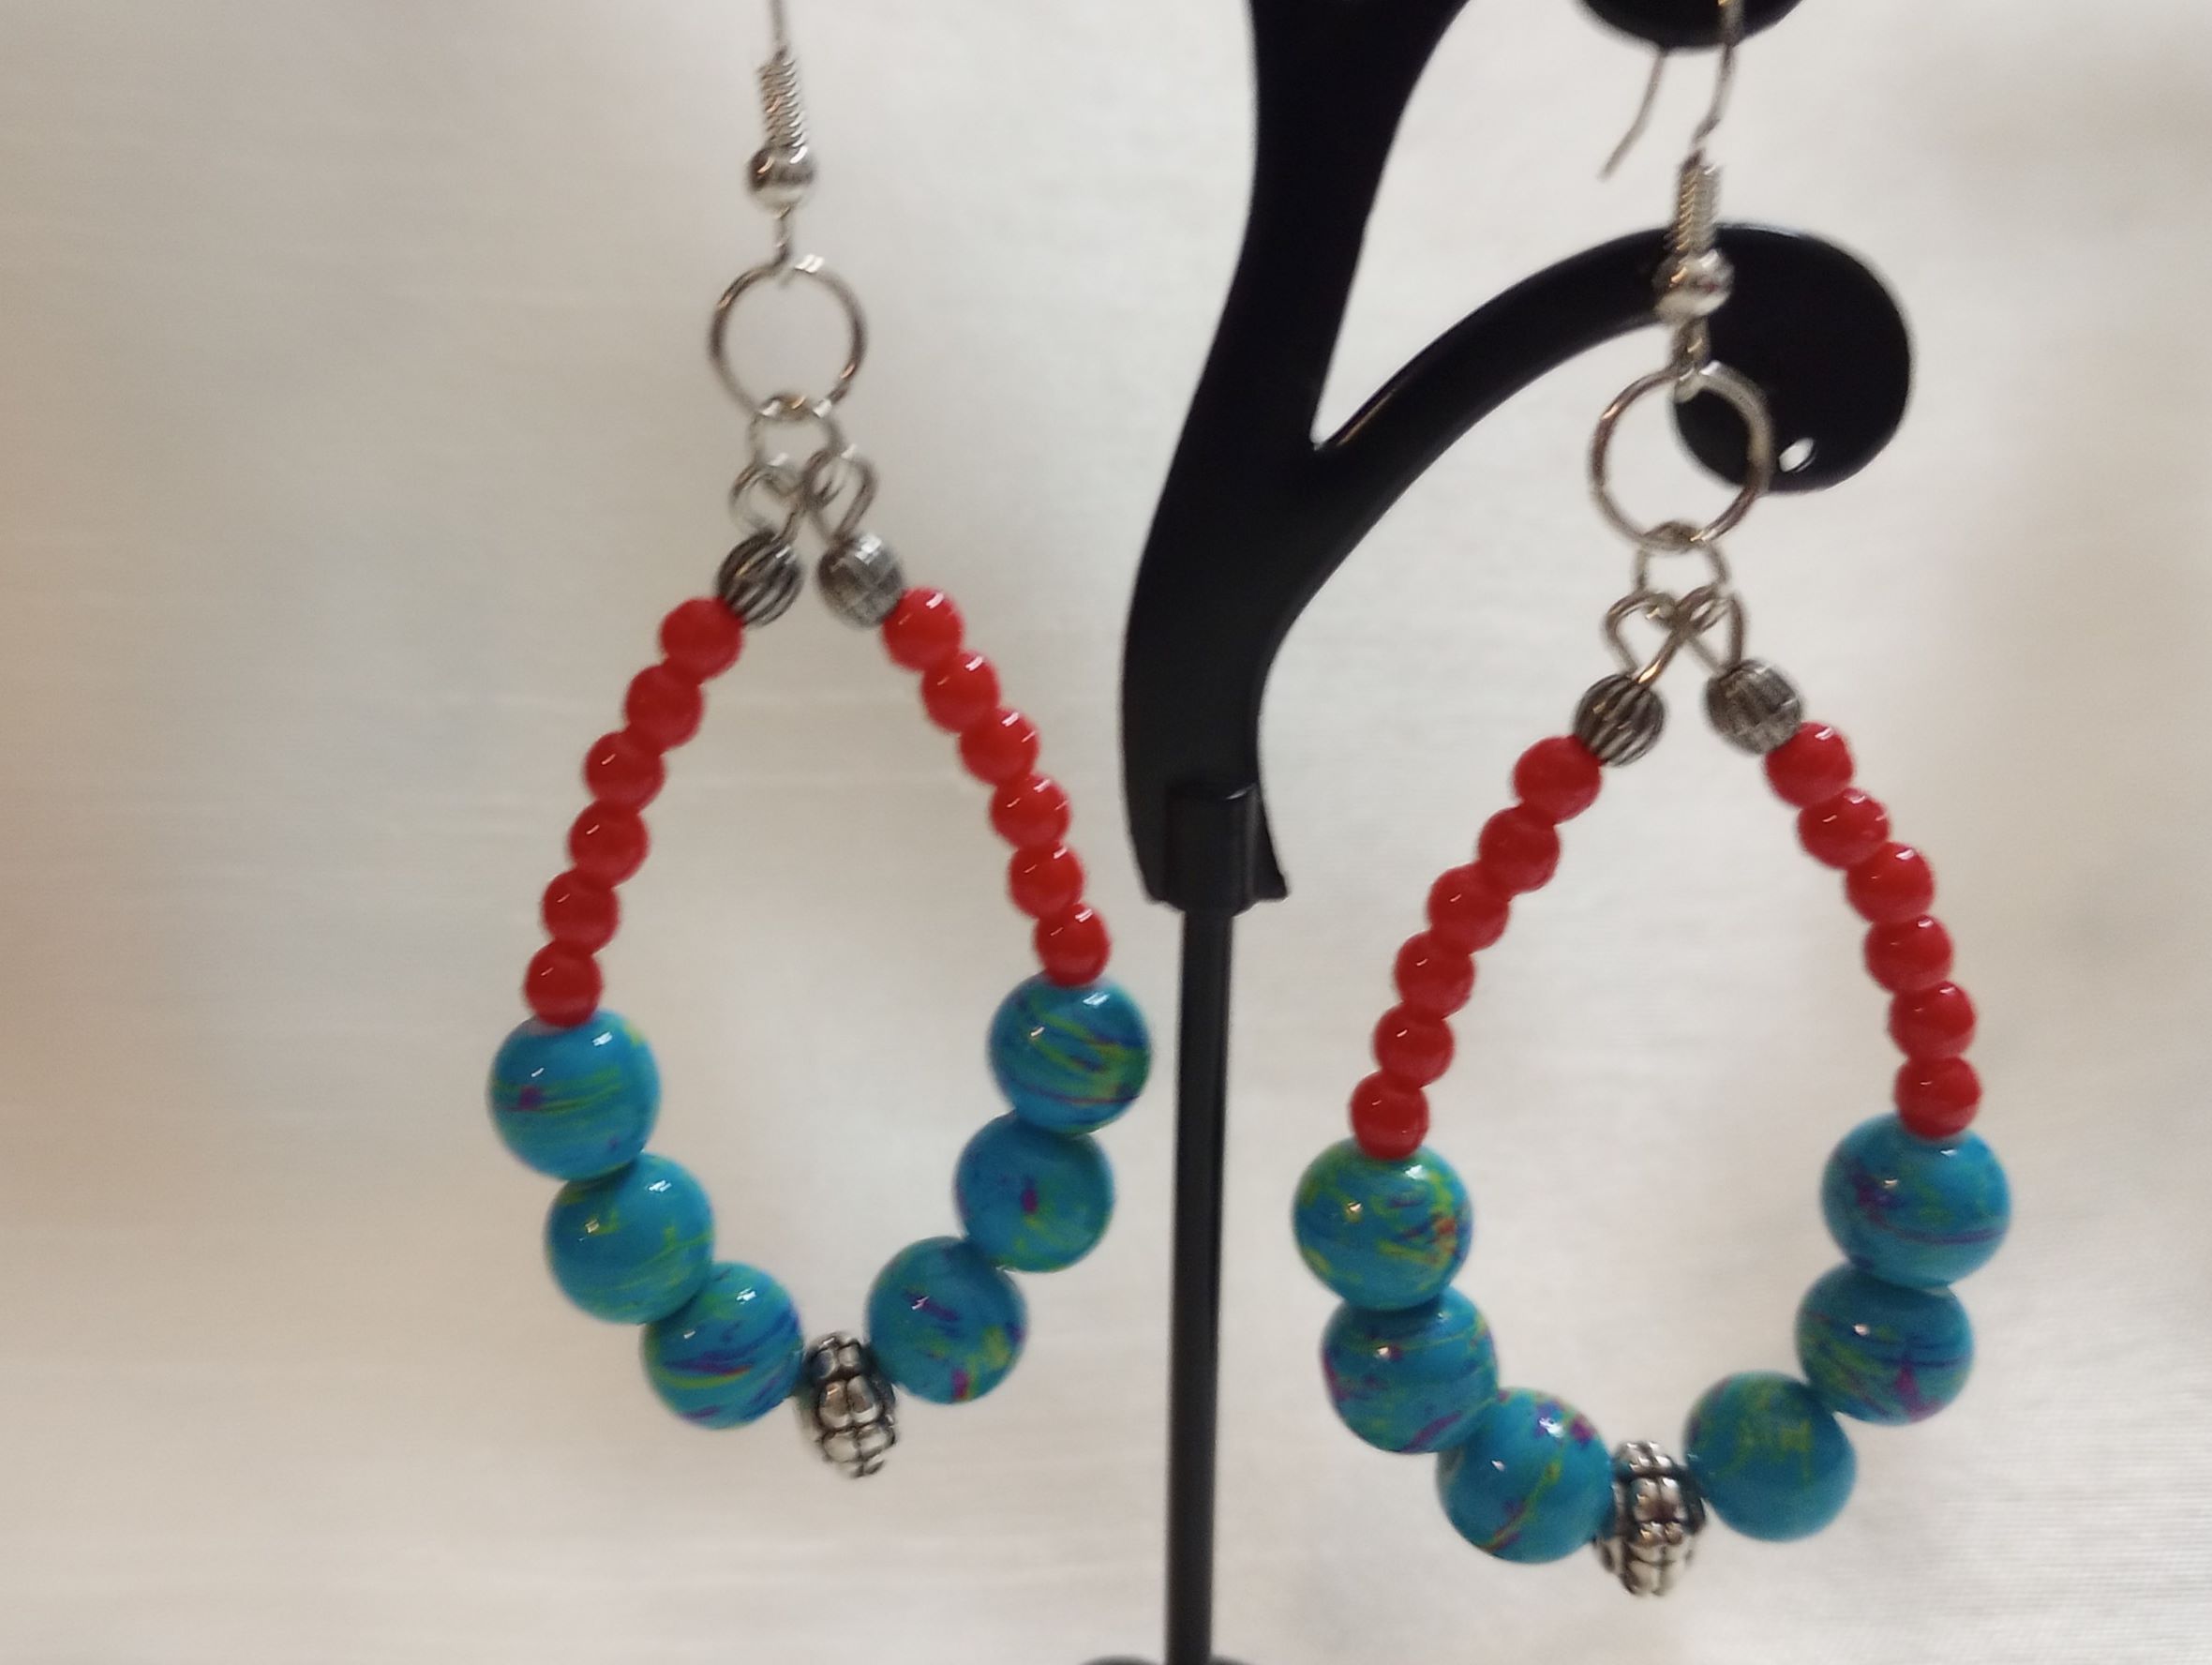 A – Blue Red Earrings